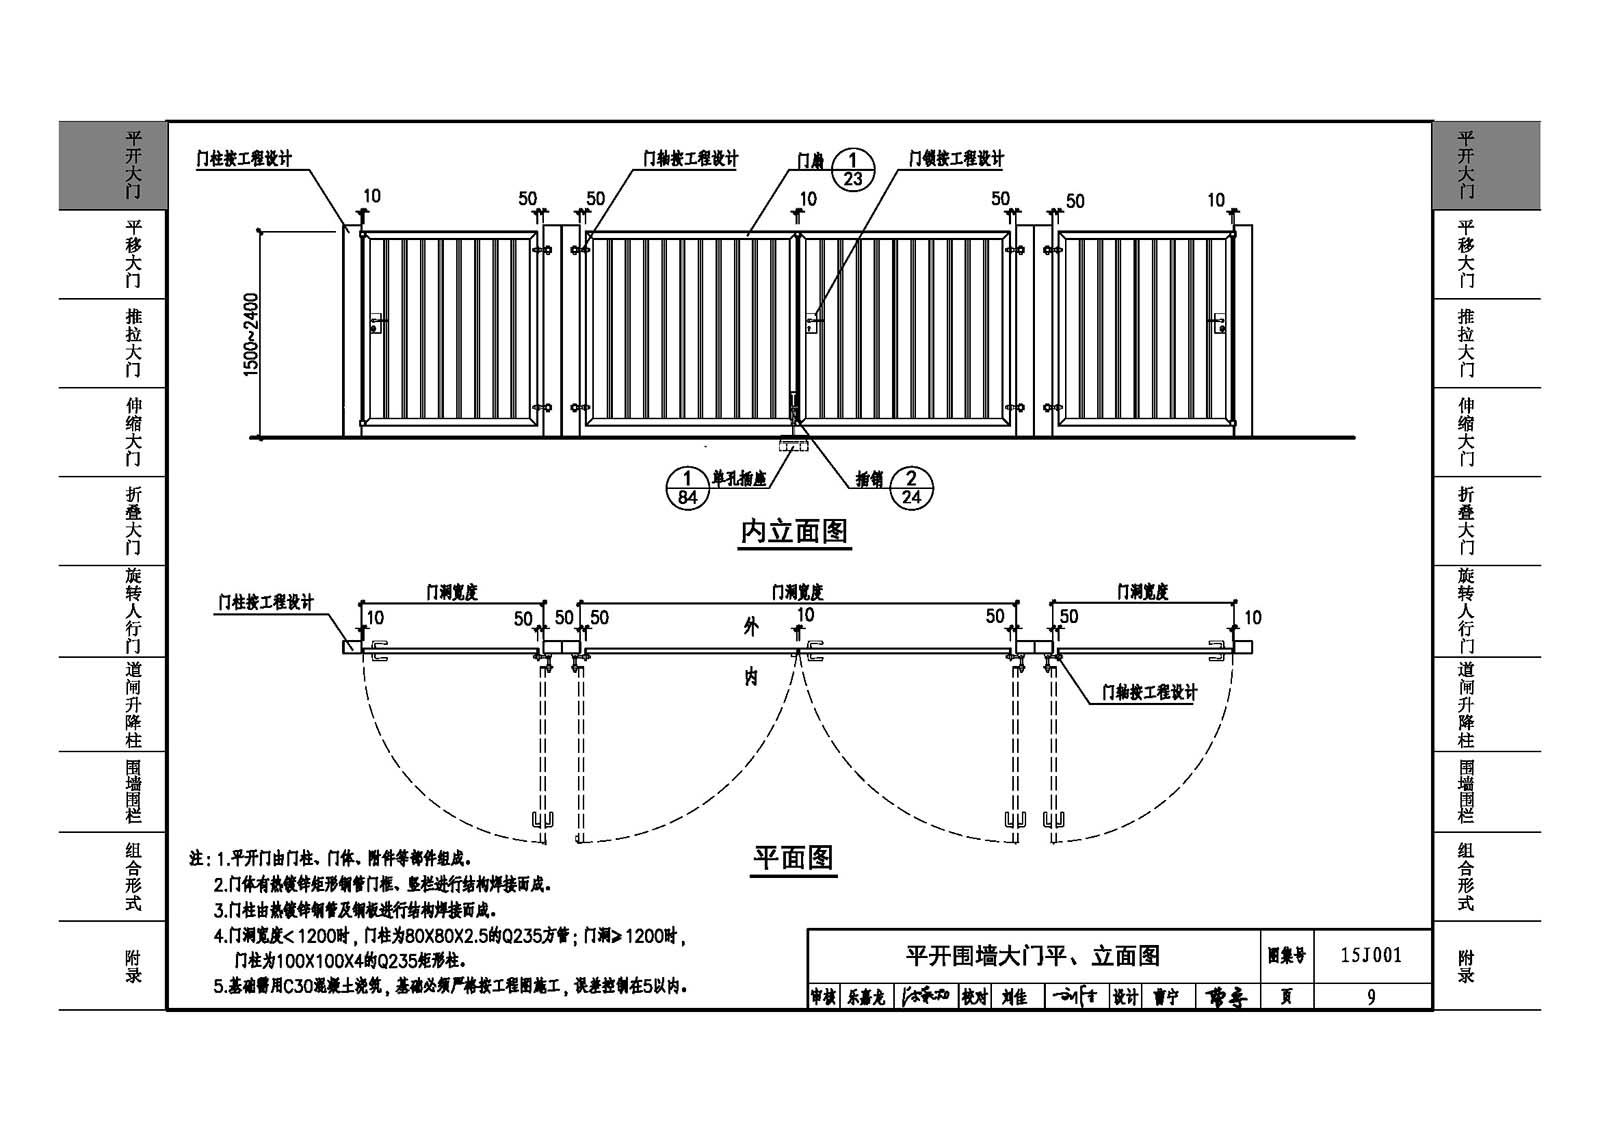 15J001:围墙大门 - 国家建筑标准设计网